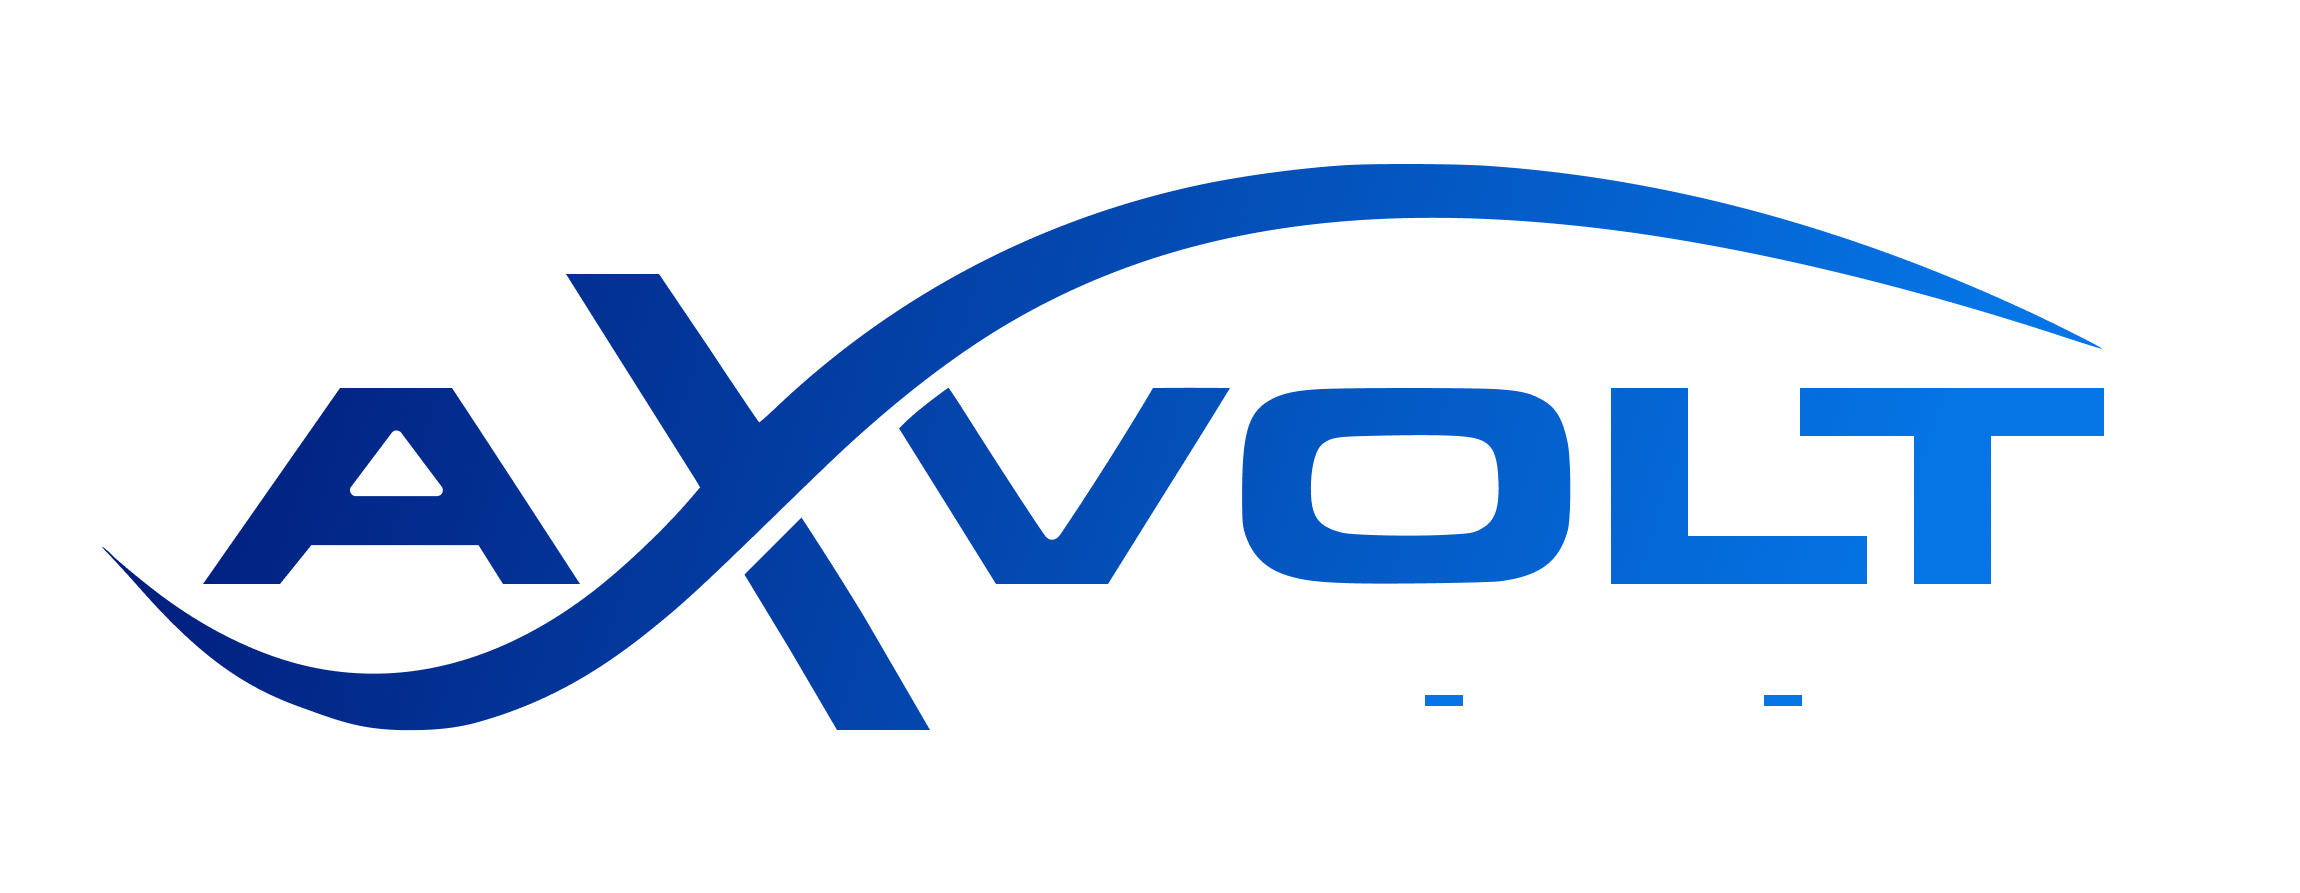 Industrial Voltage Stabilizer | Servo Stabilizer in Gujarat | Axvolt